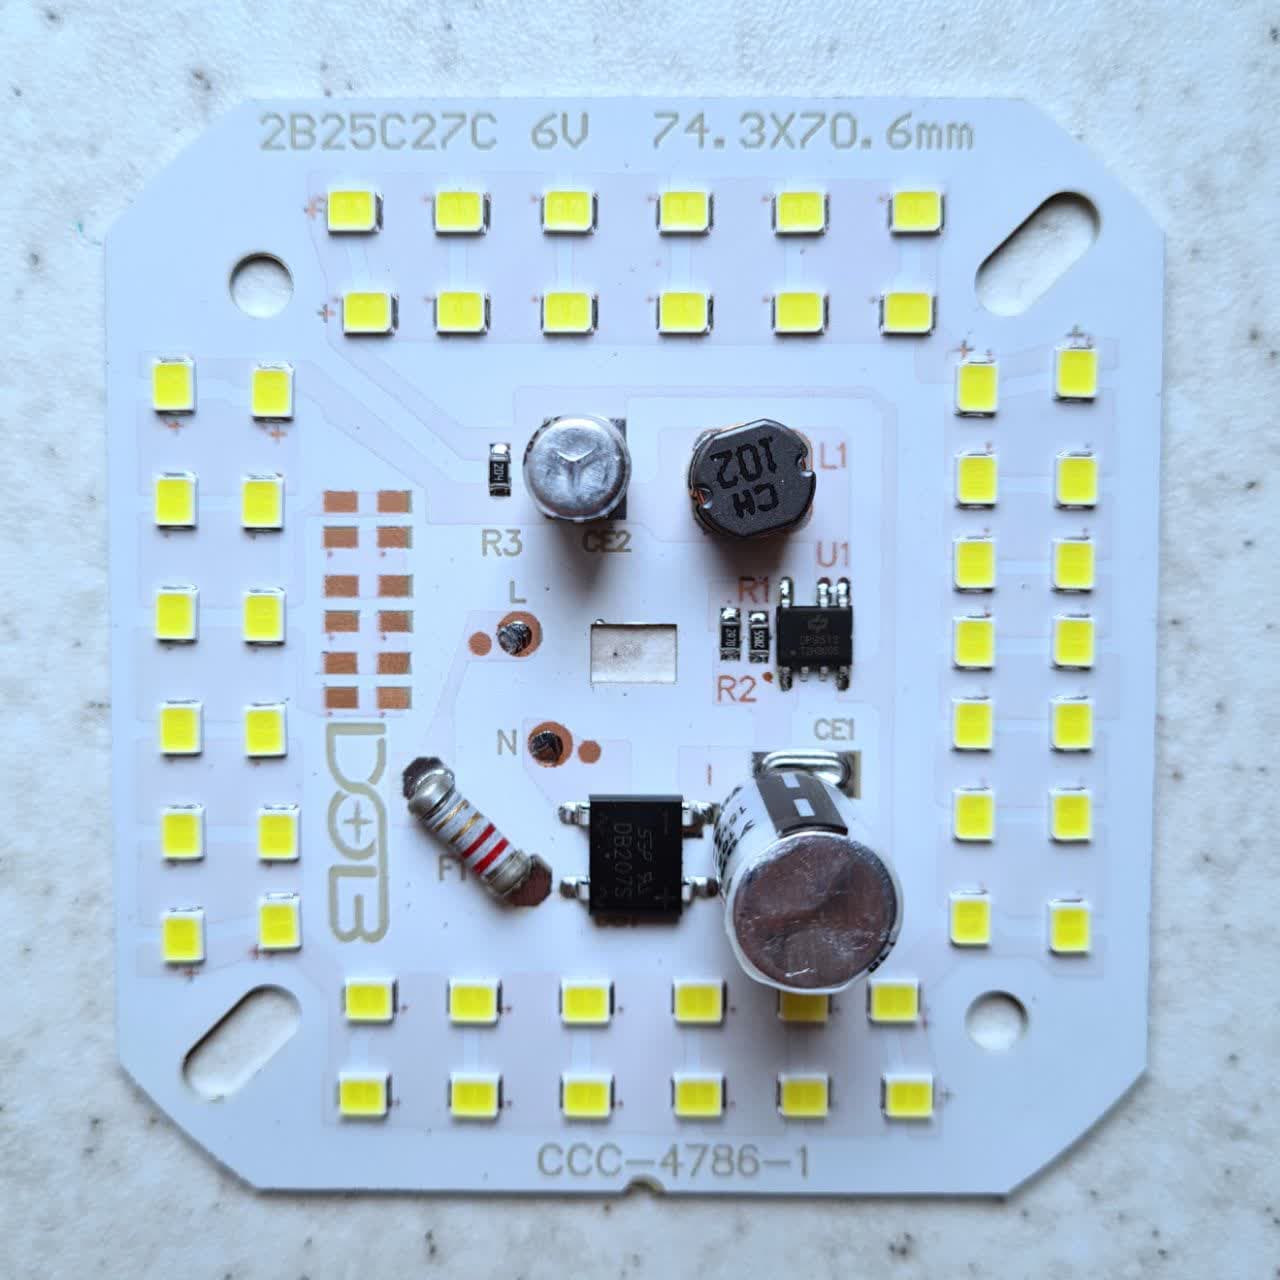 چیپ ال ای دی 50 وات  ماژول دی او بی سی سی سی 2خازنه رنگ سفید  مهتابی مناسب جهت تعمیرلامپ.  chip led dob 50w ccc 220v